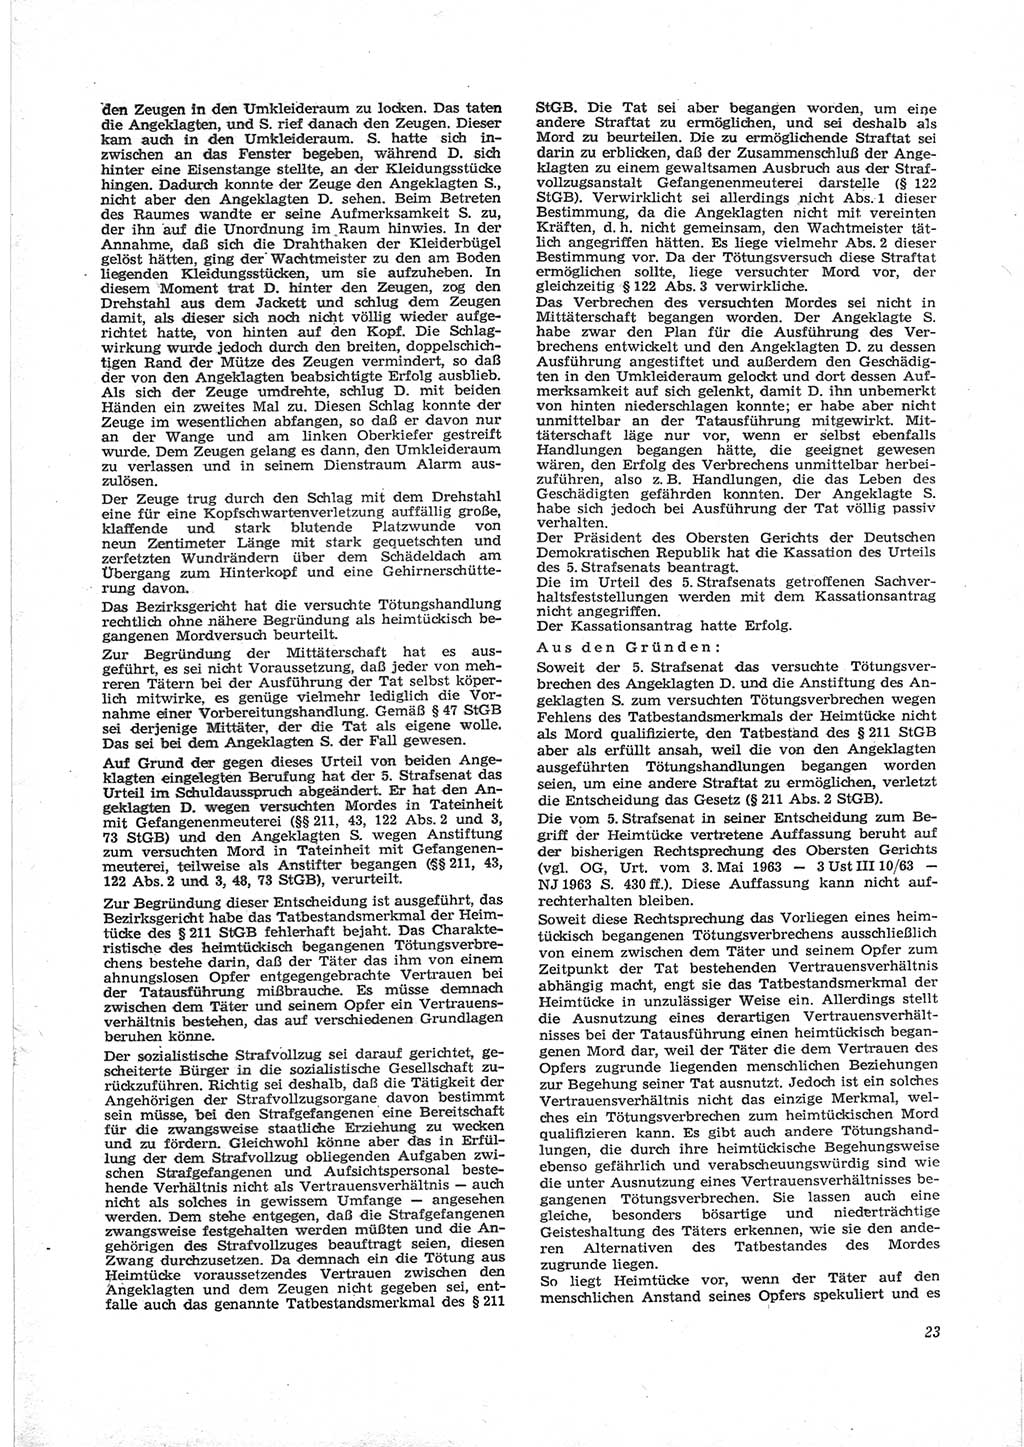 Neue Justiz (NJ), Zeitschrift für Recht und Rechtswissenschaft [Deutsche Demokratische Republik (DDR)], 18. Jahrgang 1964, Seite 23 (NJ DDR 1964, S. 23)